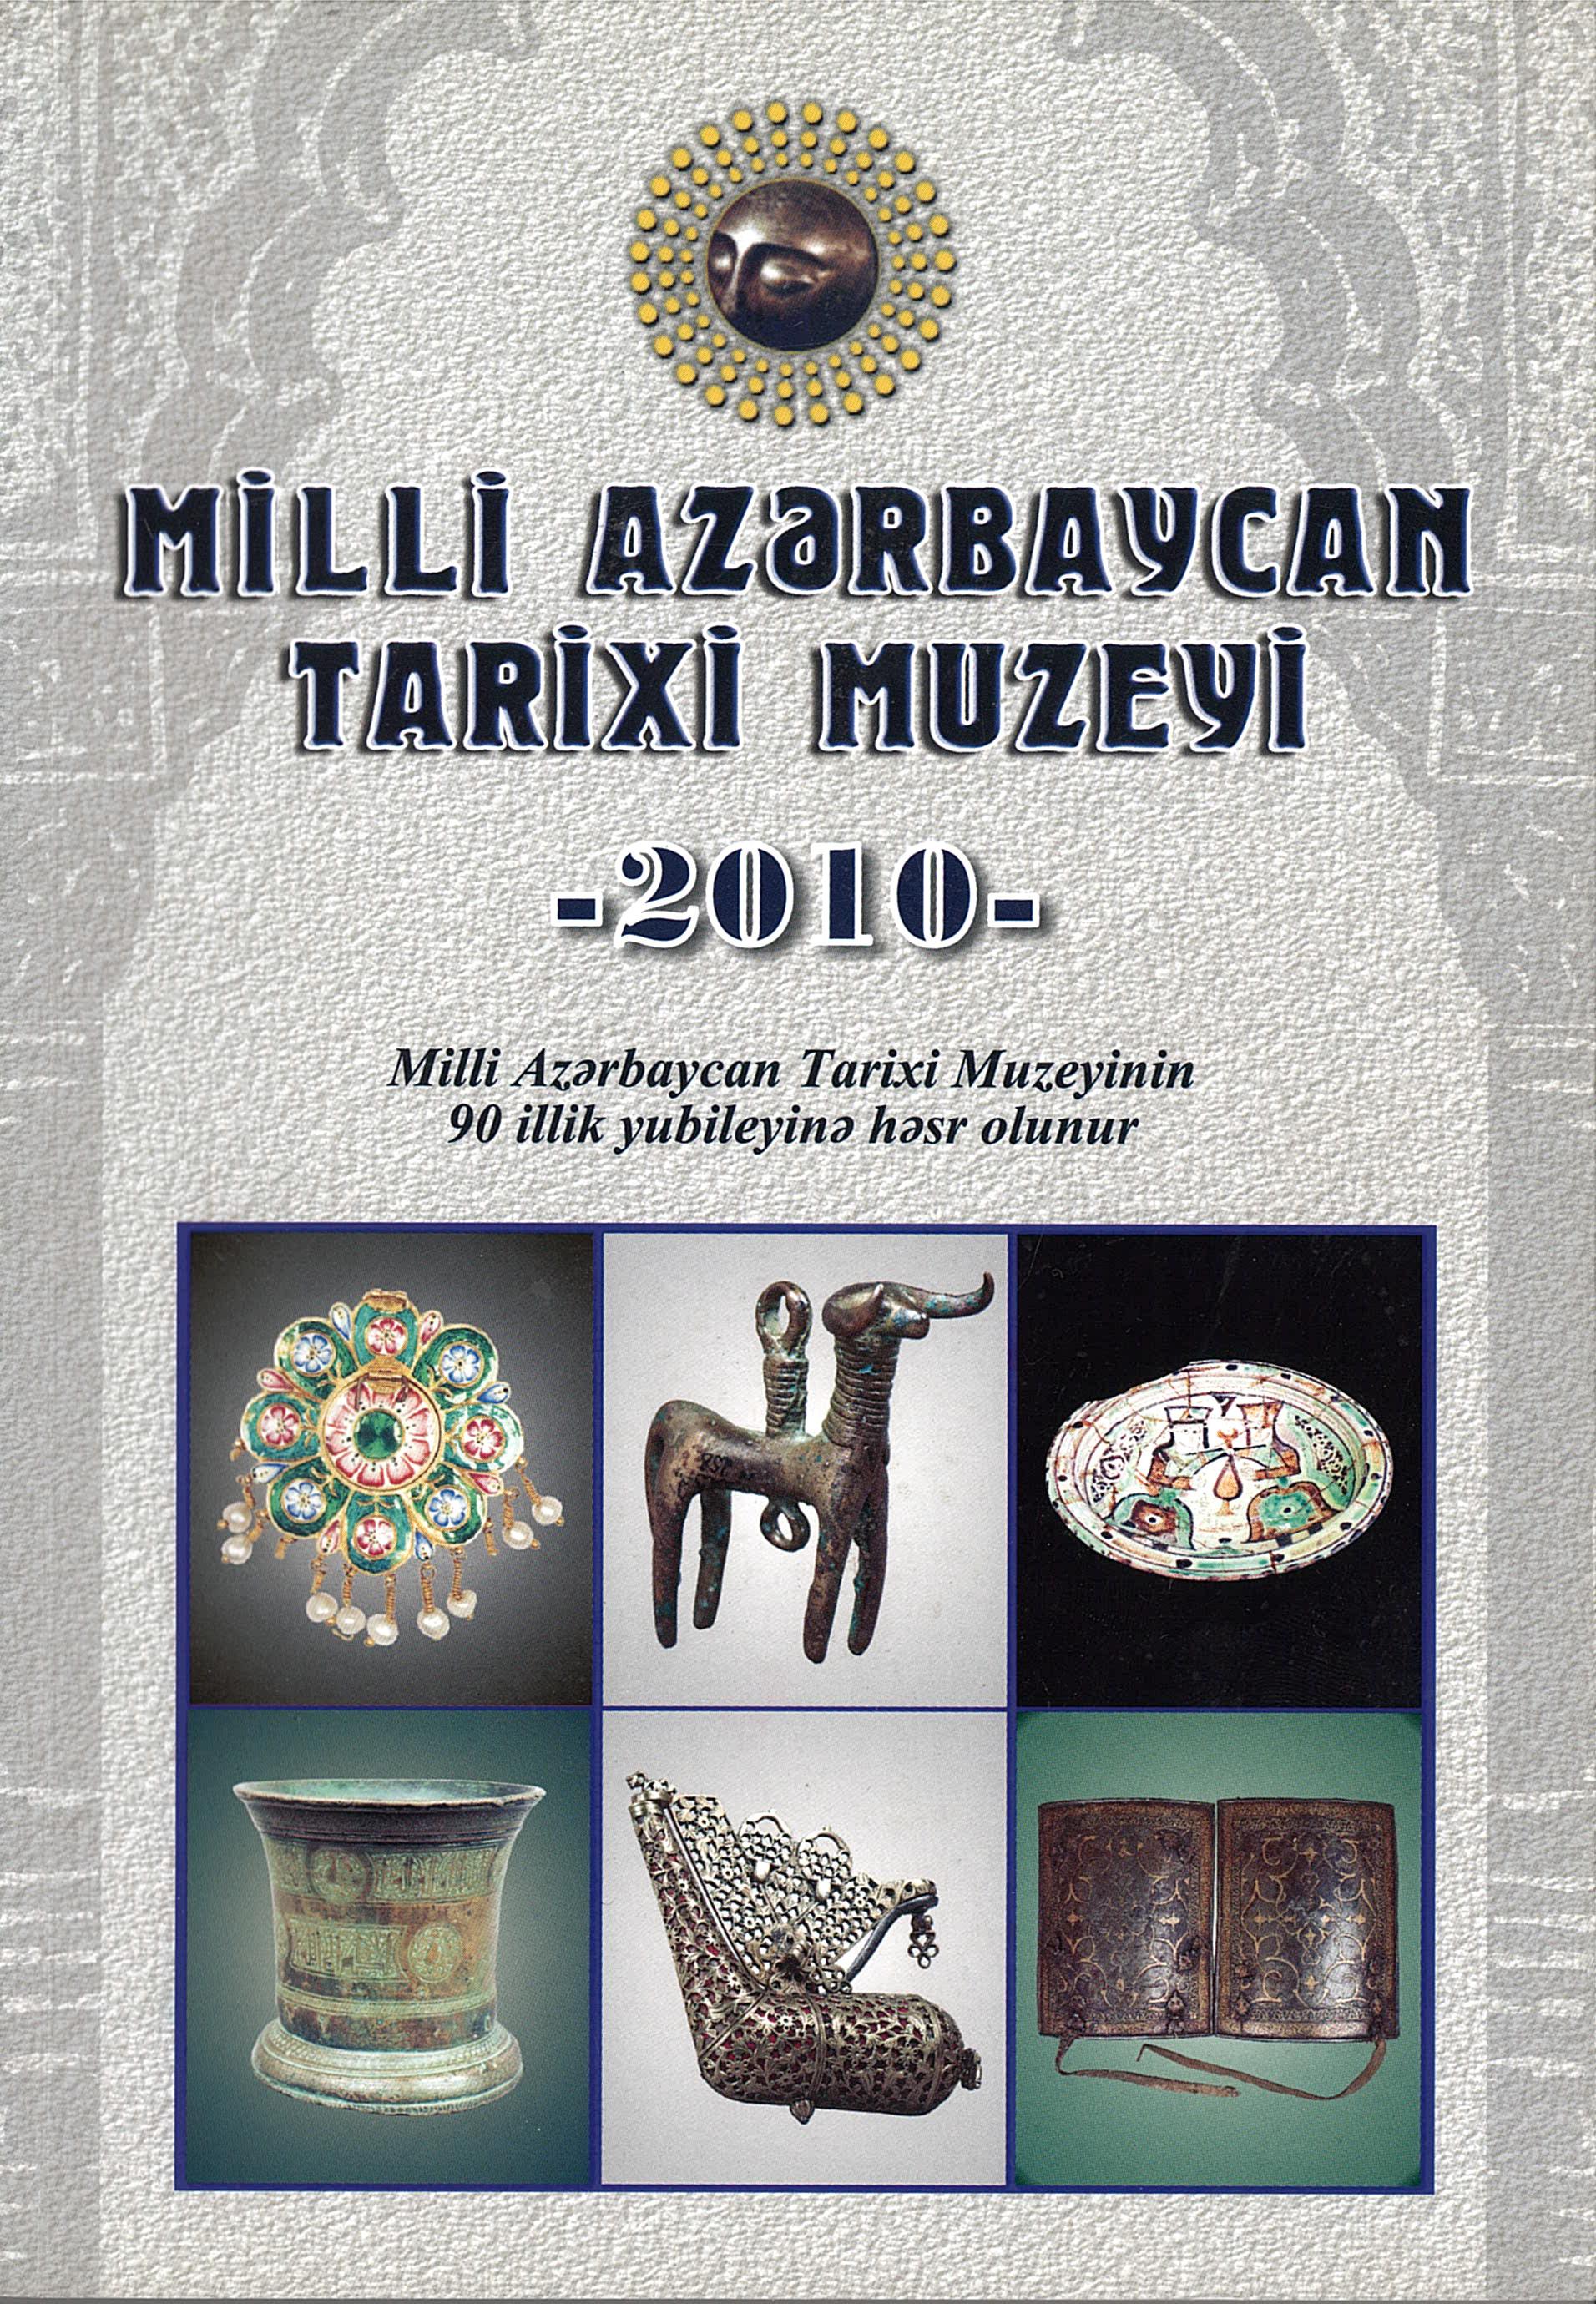  Milli Azərbaycan Tarixi Muzeyi - 2010 ( Milli Azərbaycan Tarixi Muzeyinin 90 illik yubileyinə həsr olunur )